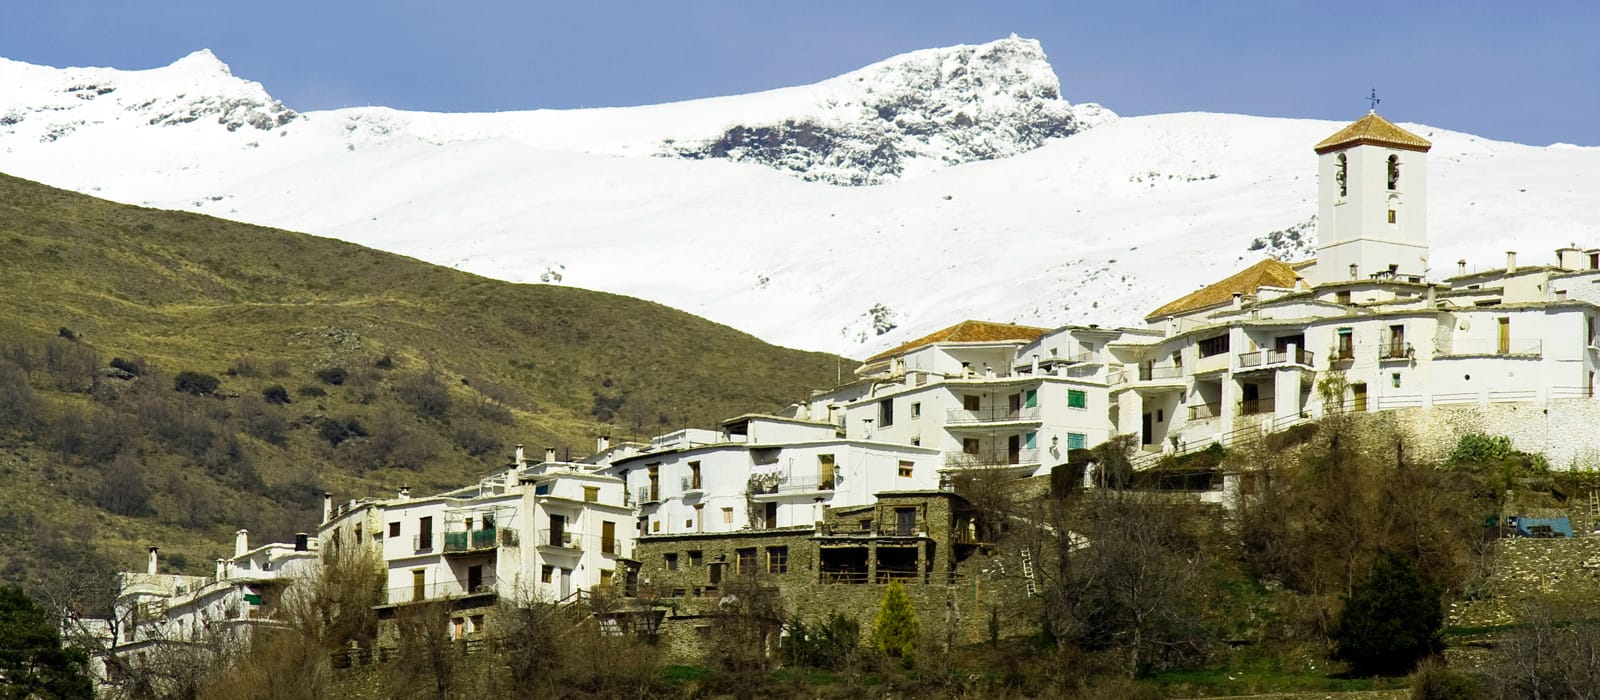 Ruta de invierno "Barranco de Poqueira" (Bubión, Pampaneira y Capileira)